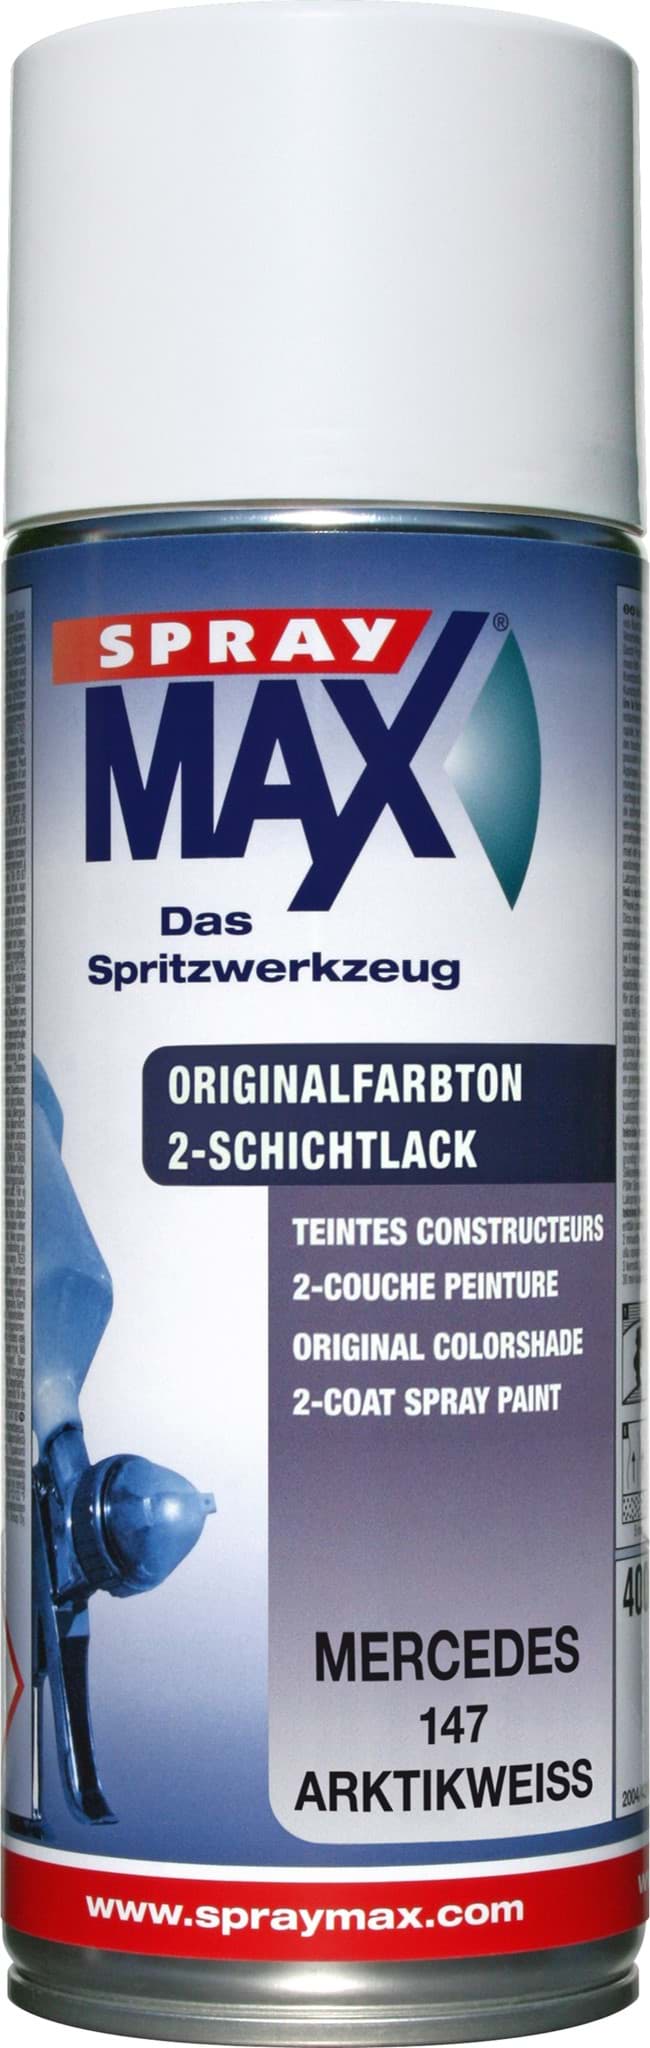 Obraz SprayMax Originalfarbton für Mercedes 147 arktikweiss